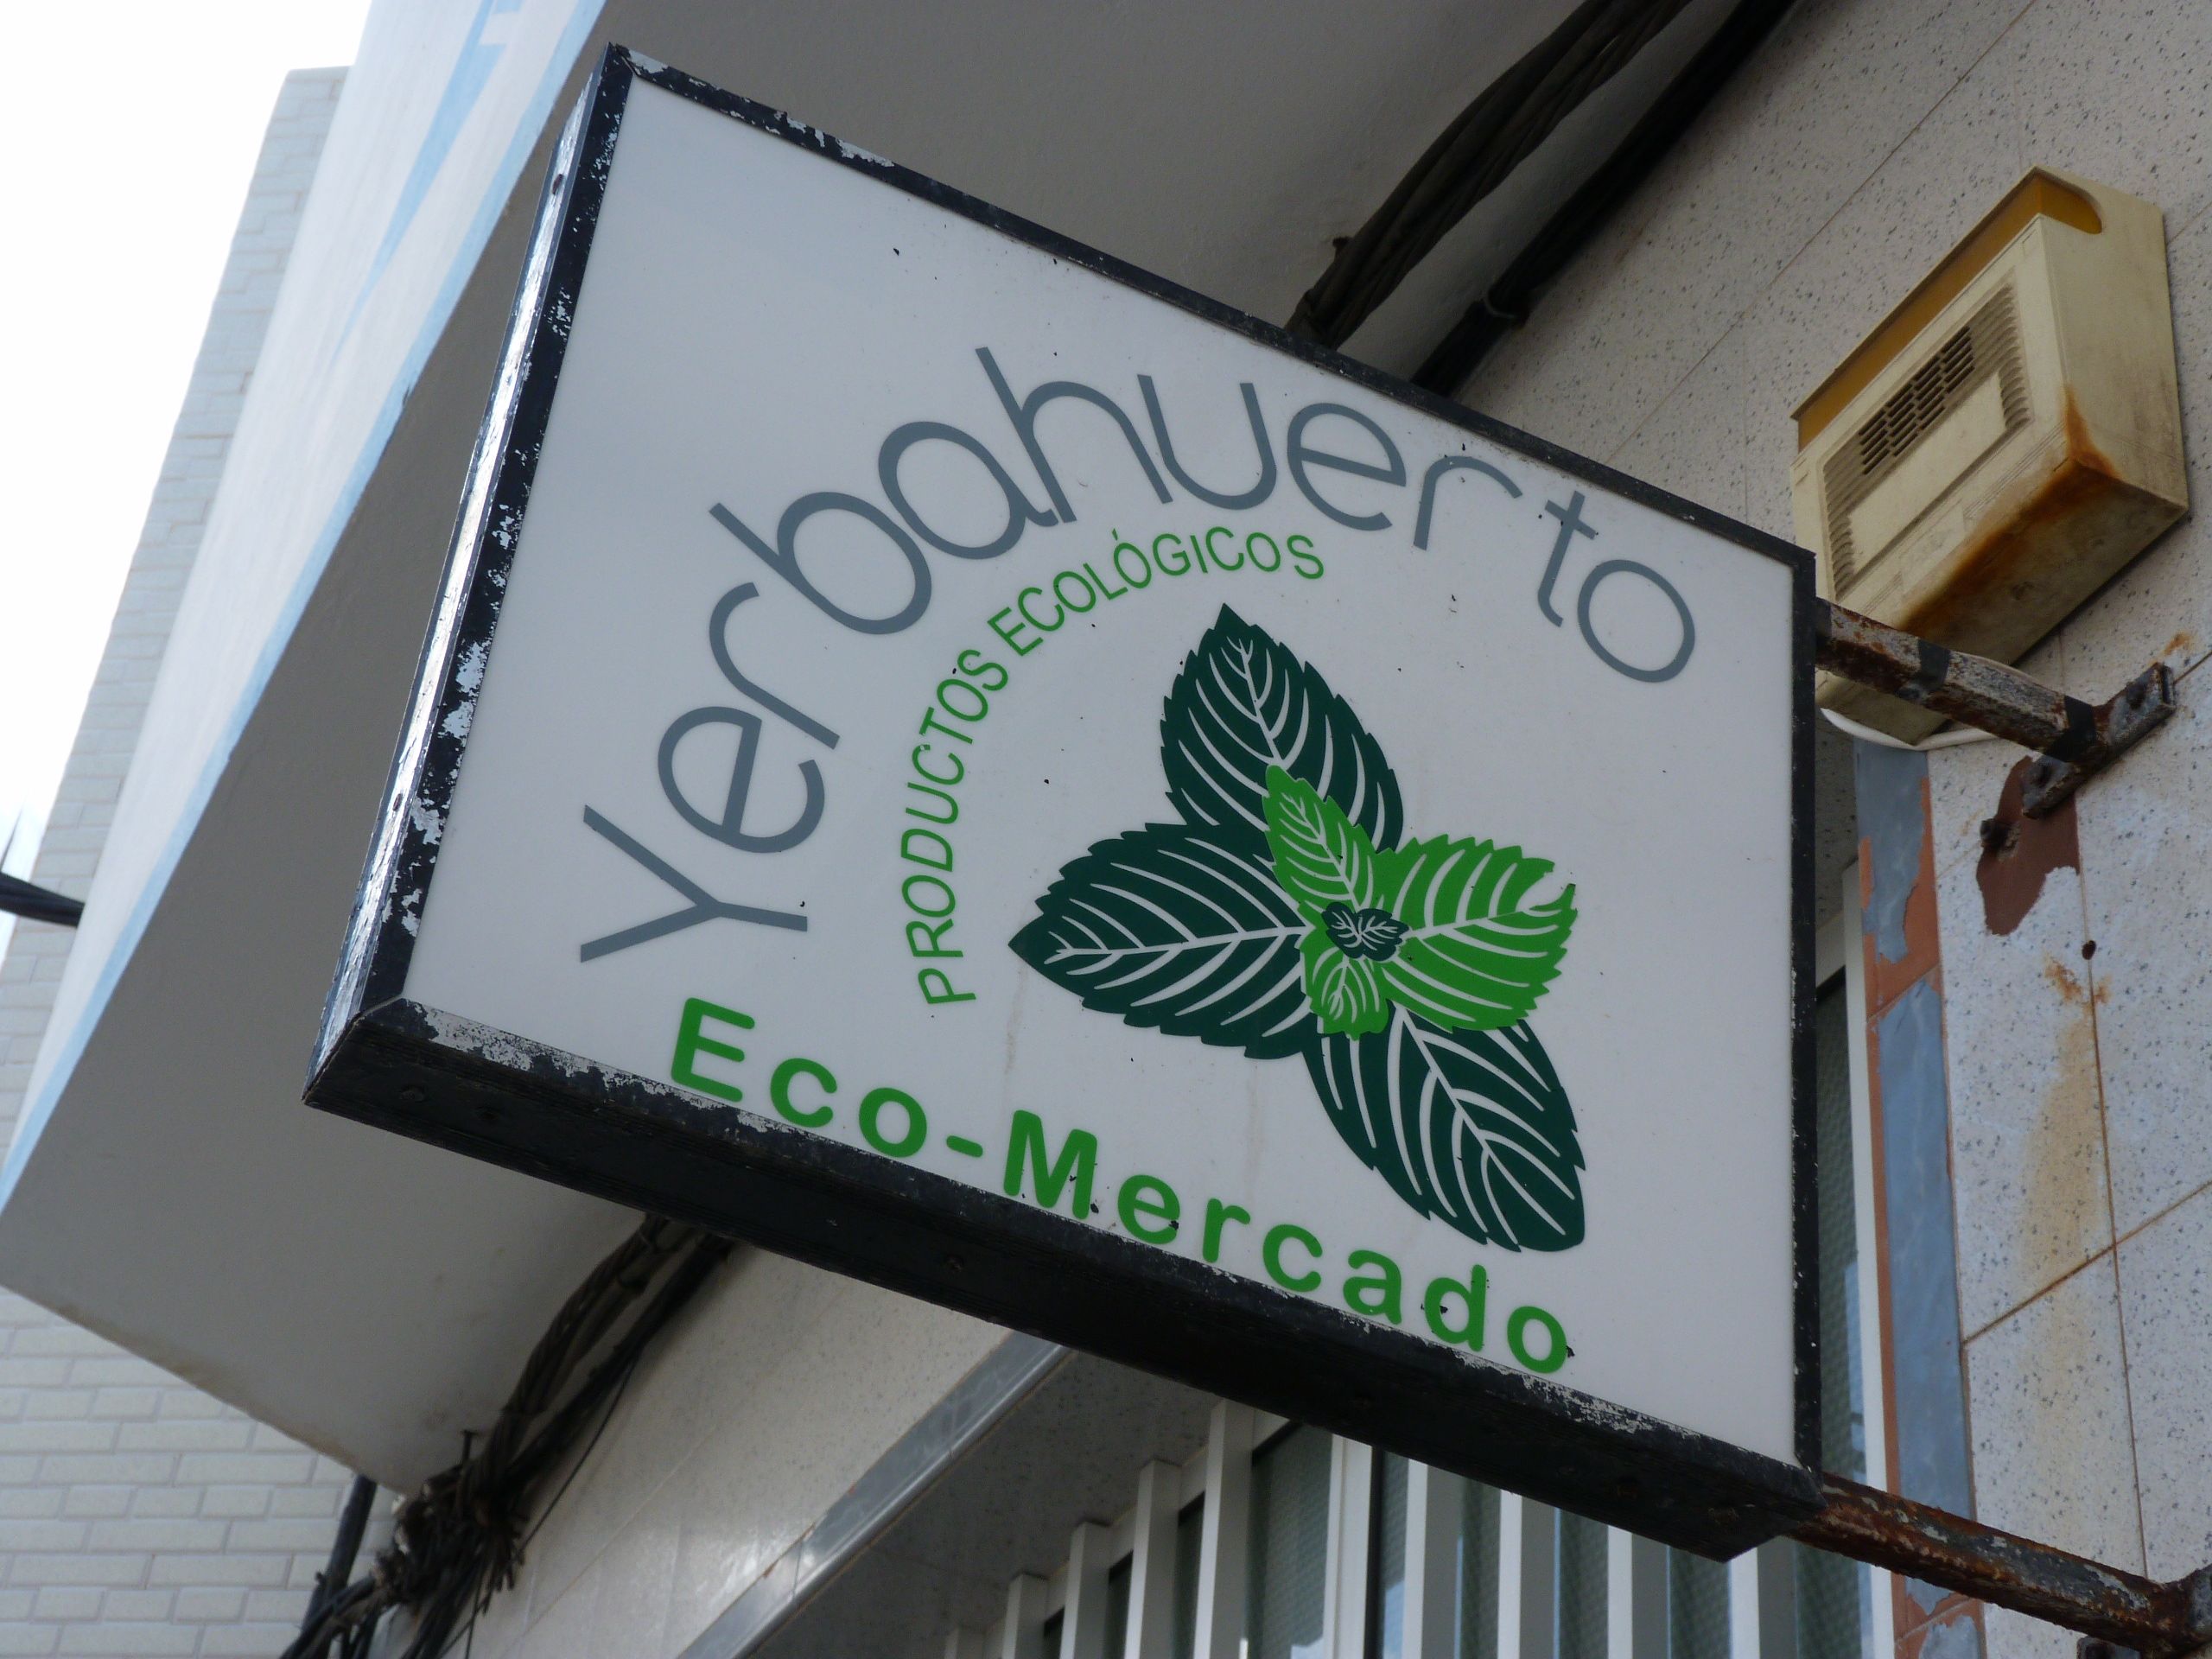 Foto 9 de Venta de productos ecológicos en Las Palmas de Gran Canaria en Costa Ayala | Yerbahuerto